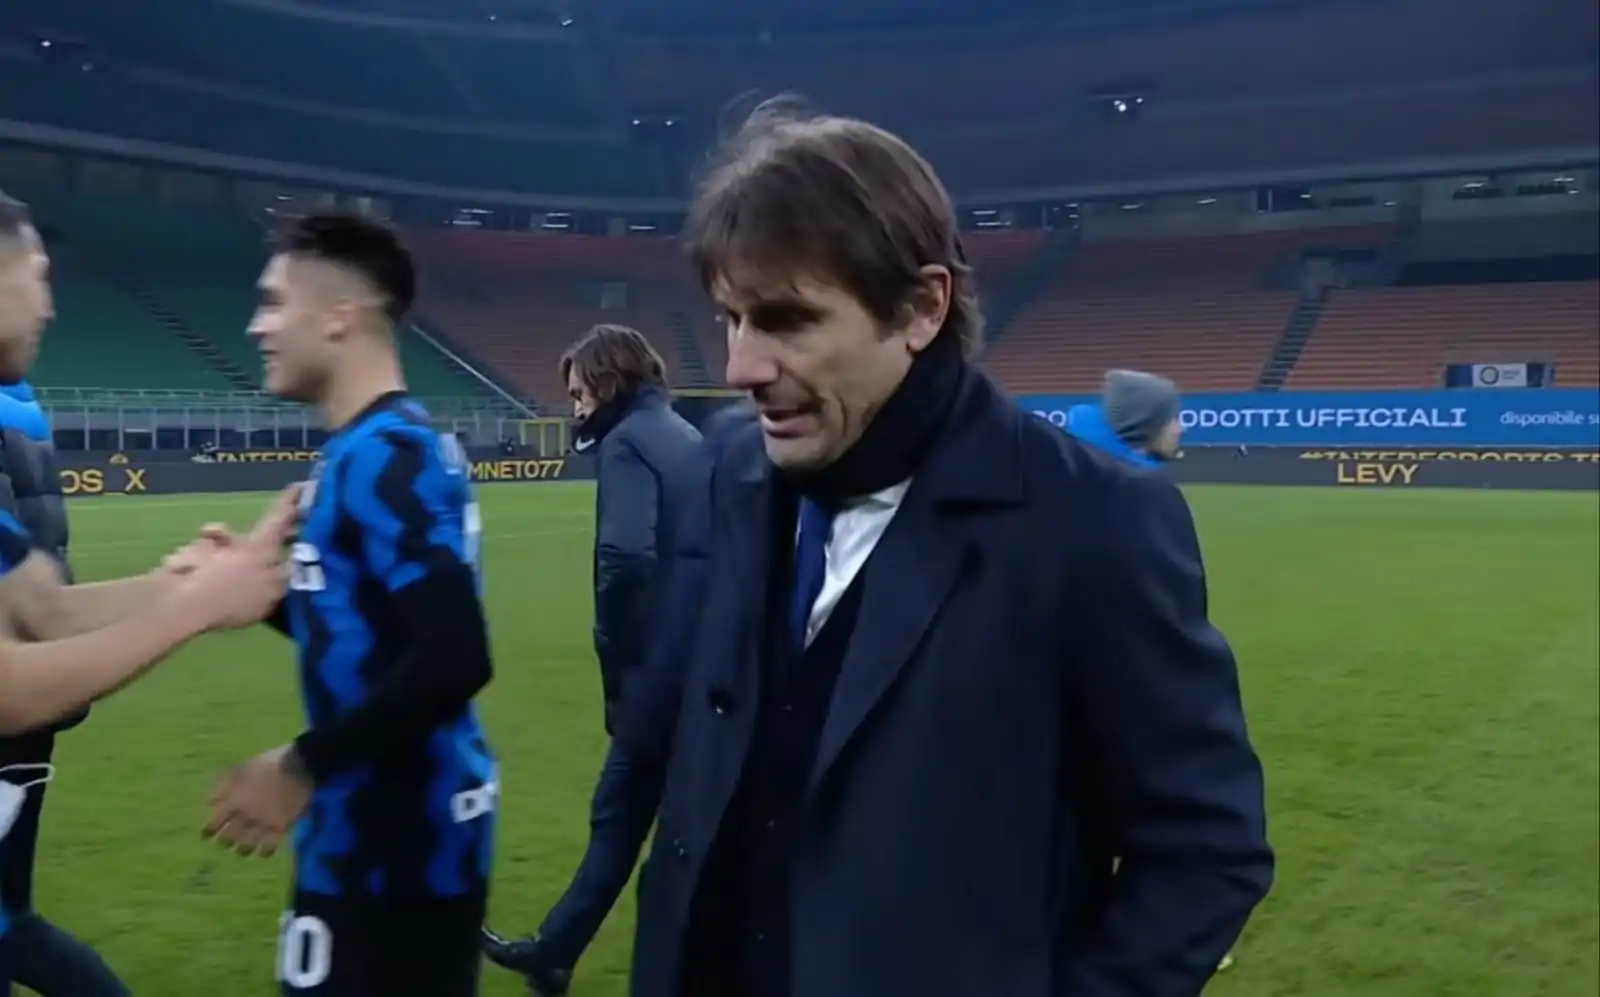 L’Inter batte l’Atalanta 1-0: la Juve torna a -10